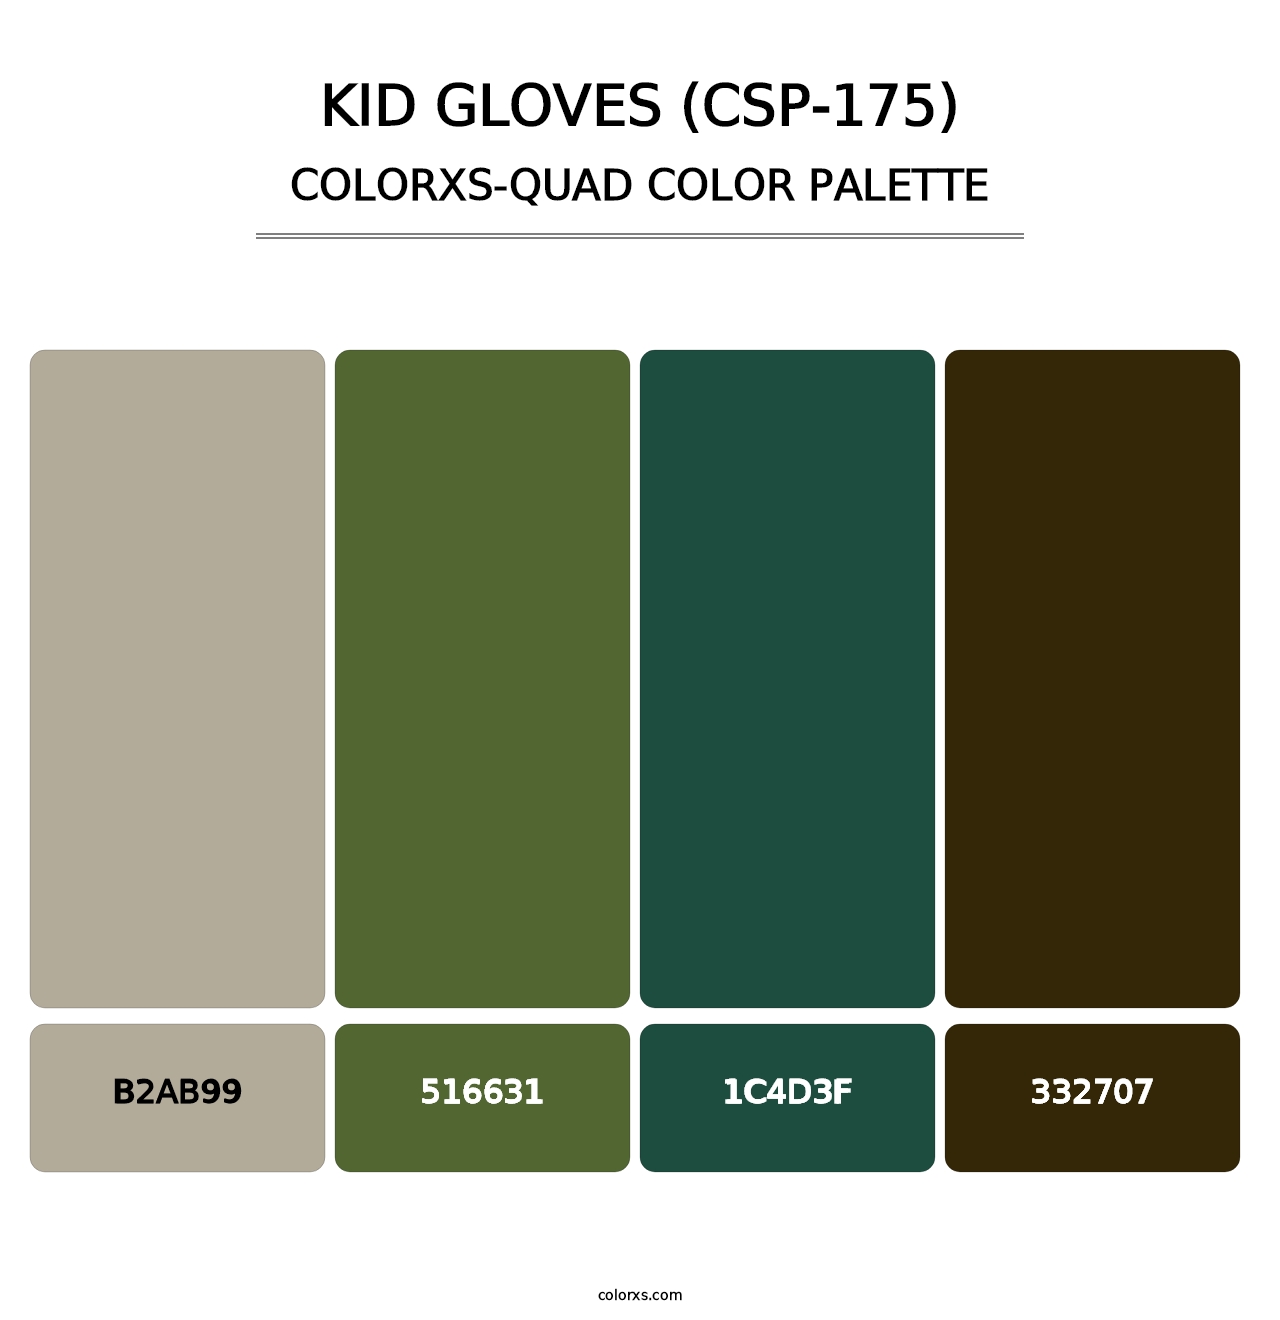 Kid Gloves (CSP-175) - Colorxs Quad Palette